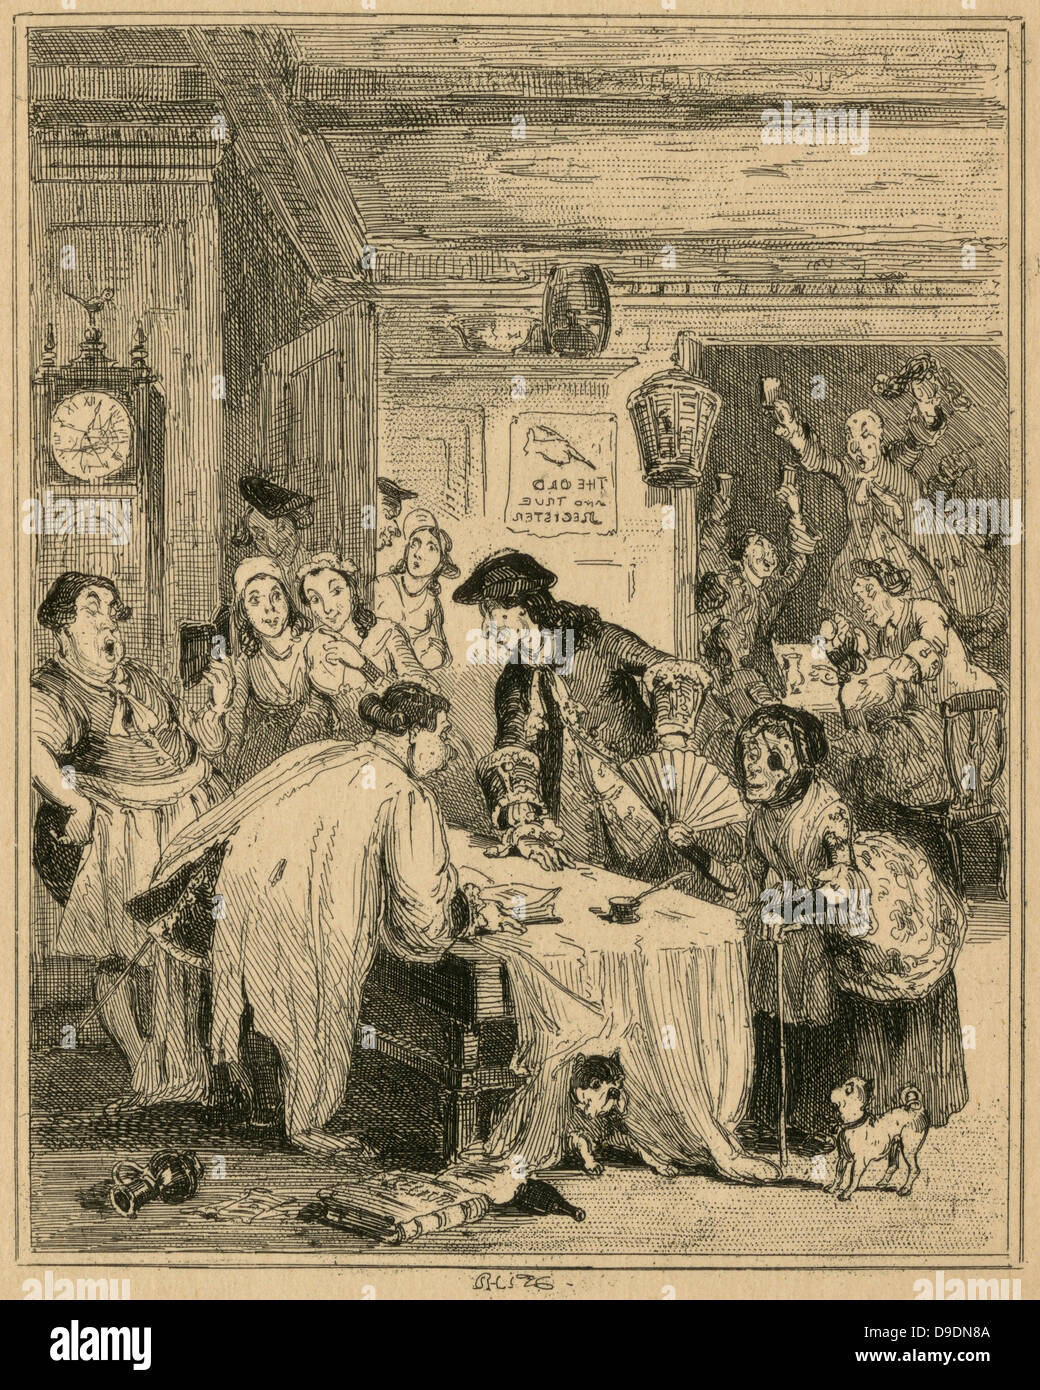 Una flotta matrimonio: degli ecclesiastici confinata nella flotta di prigione per i debitori dovrebbero sposare qualsiasi coppia senza porre domande. Illustrazione di 'Phiz' (1815-1882). Foto Stock